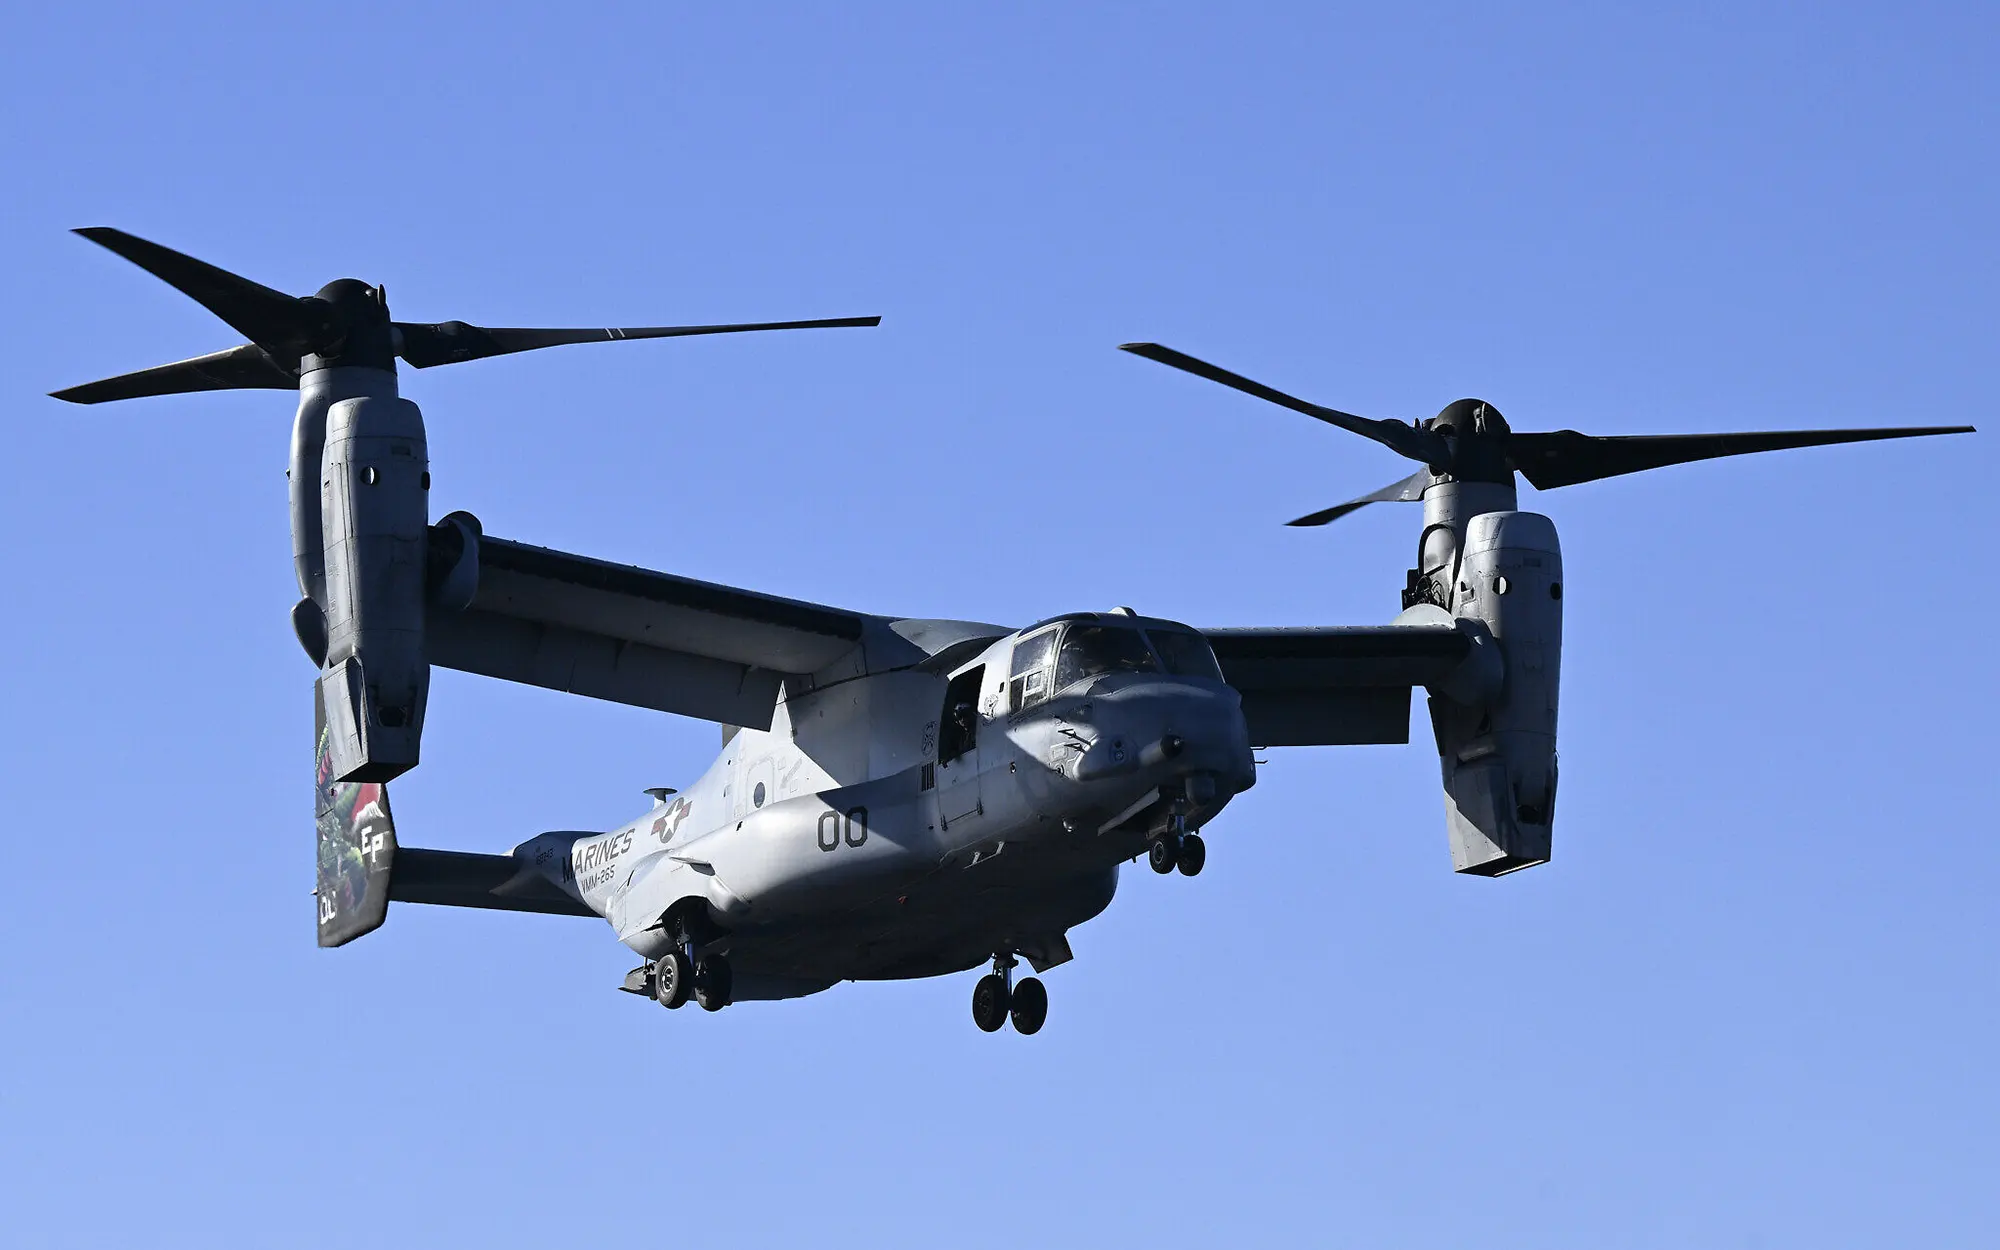 Mueren 3 marines estadounidenses al estrellarse un avión Osprey